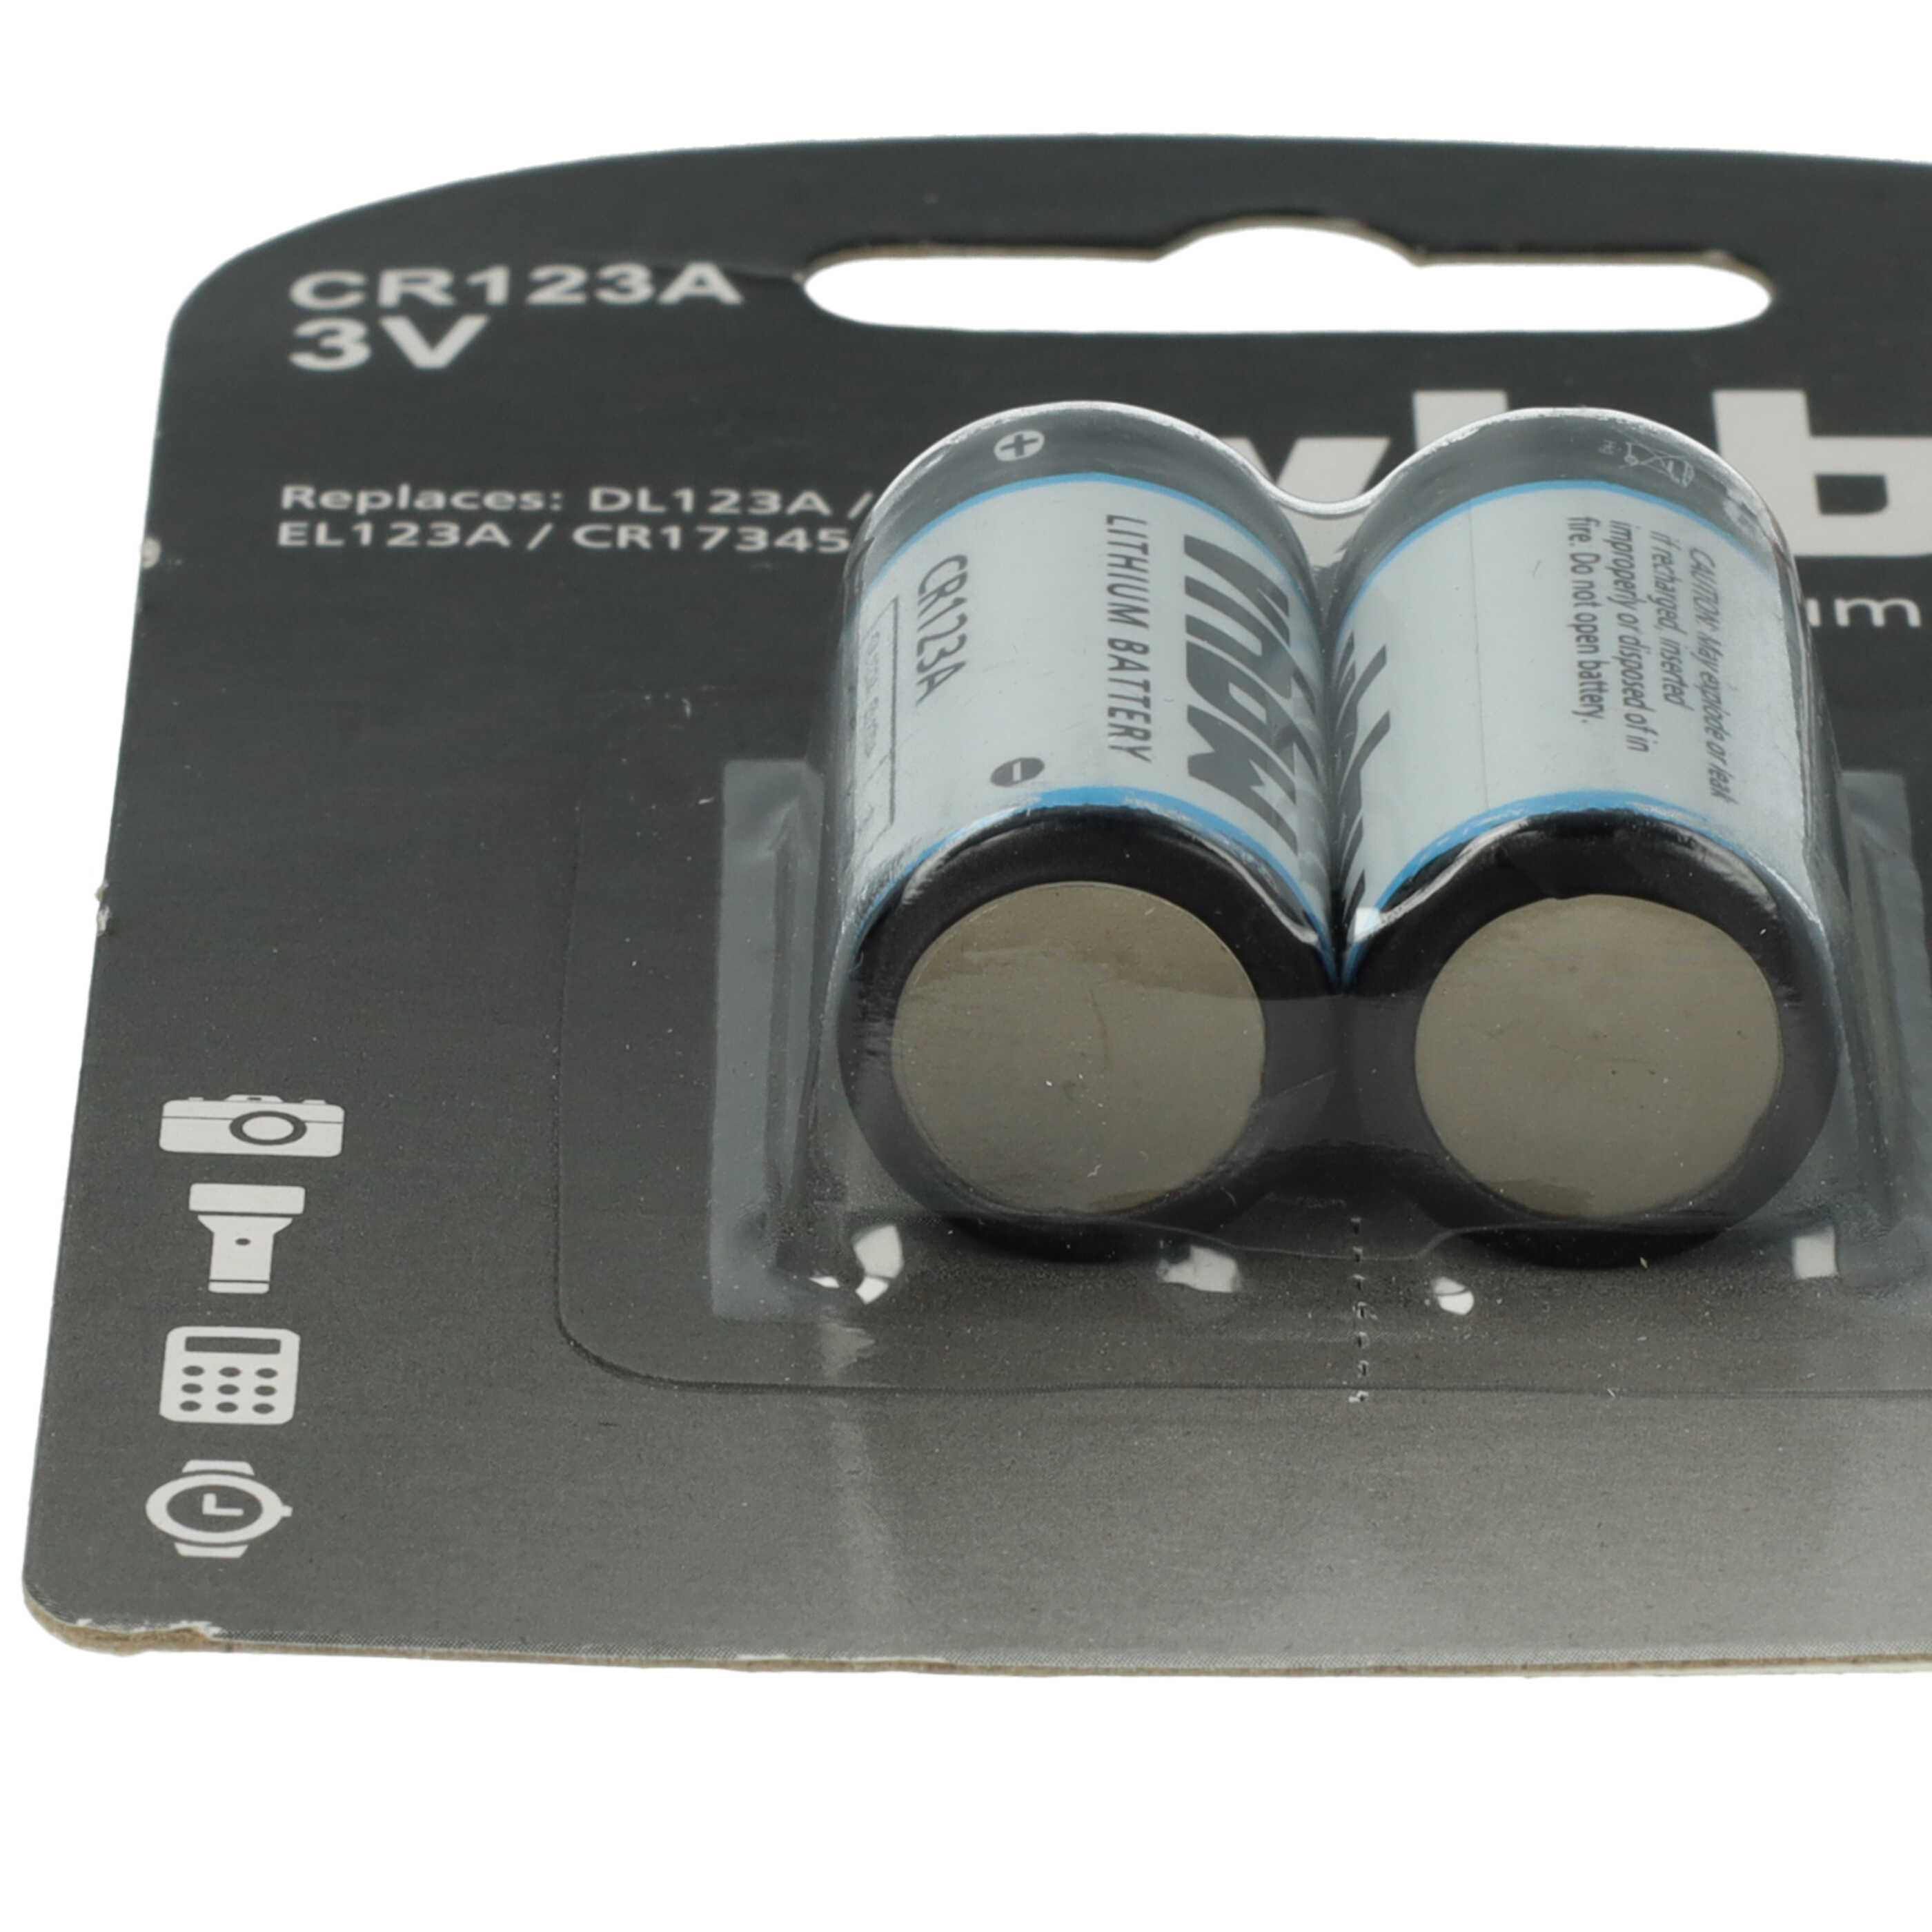 2x Batería reemplaza 16340, CR17345, CR123A para diversos dispositivos - 1600 mAh 3 V Li-Ion - universal